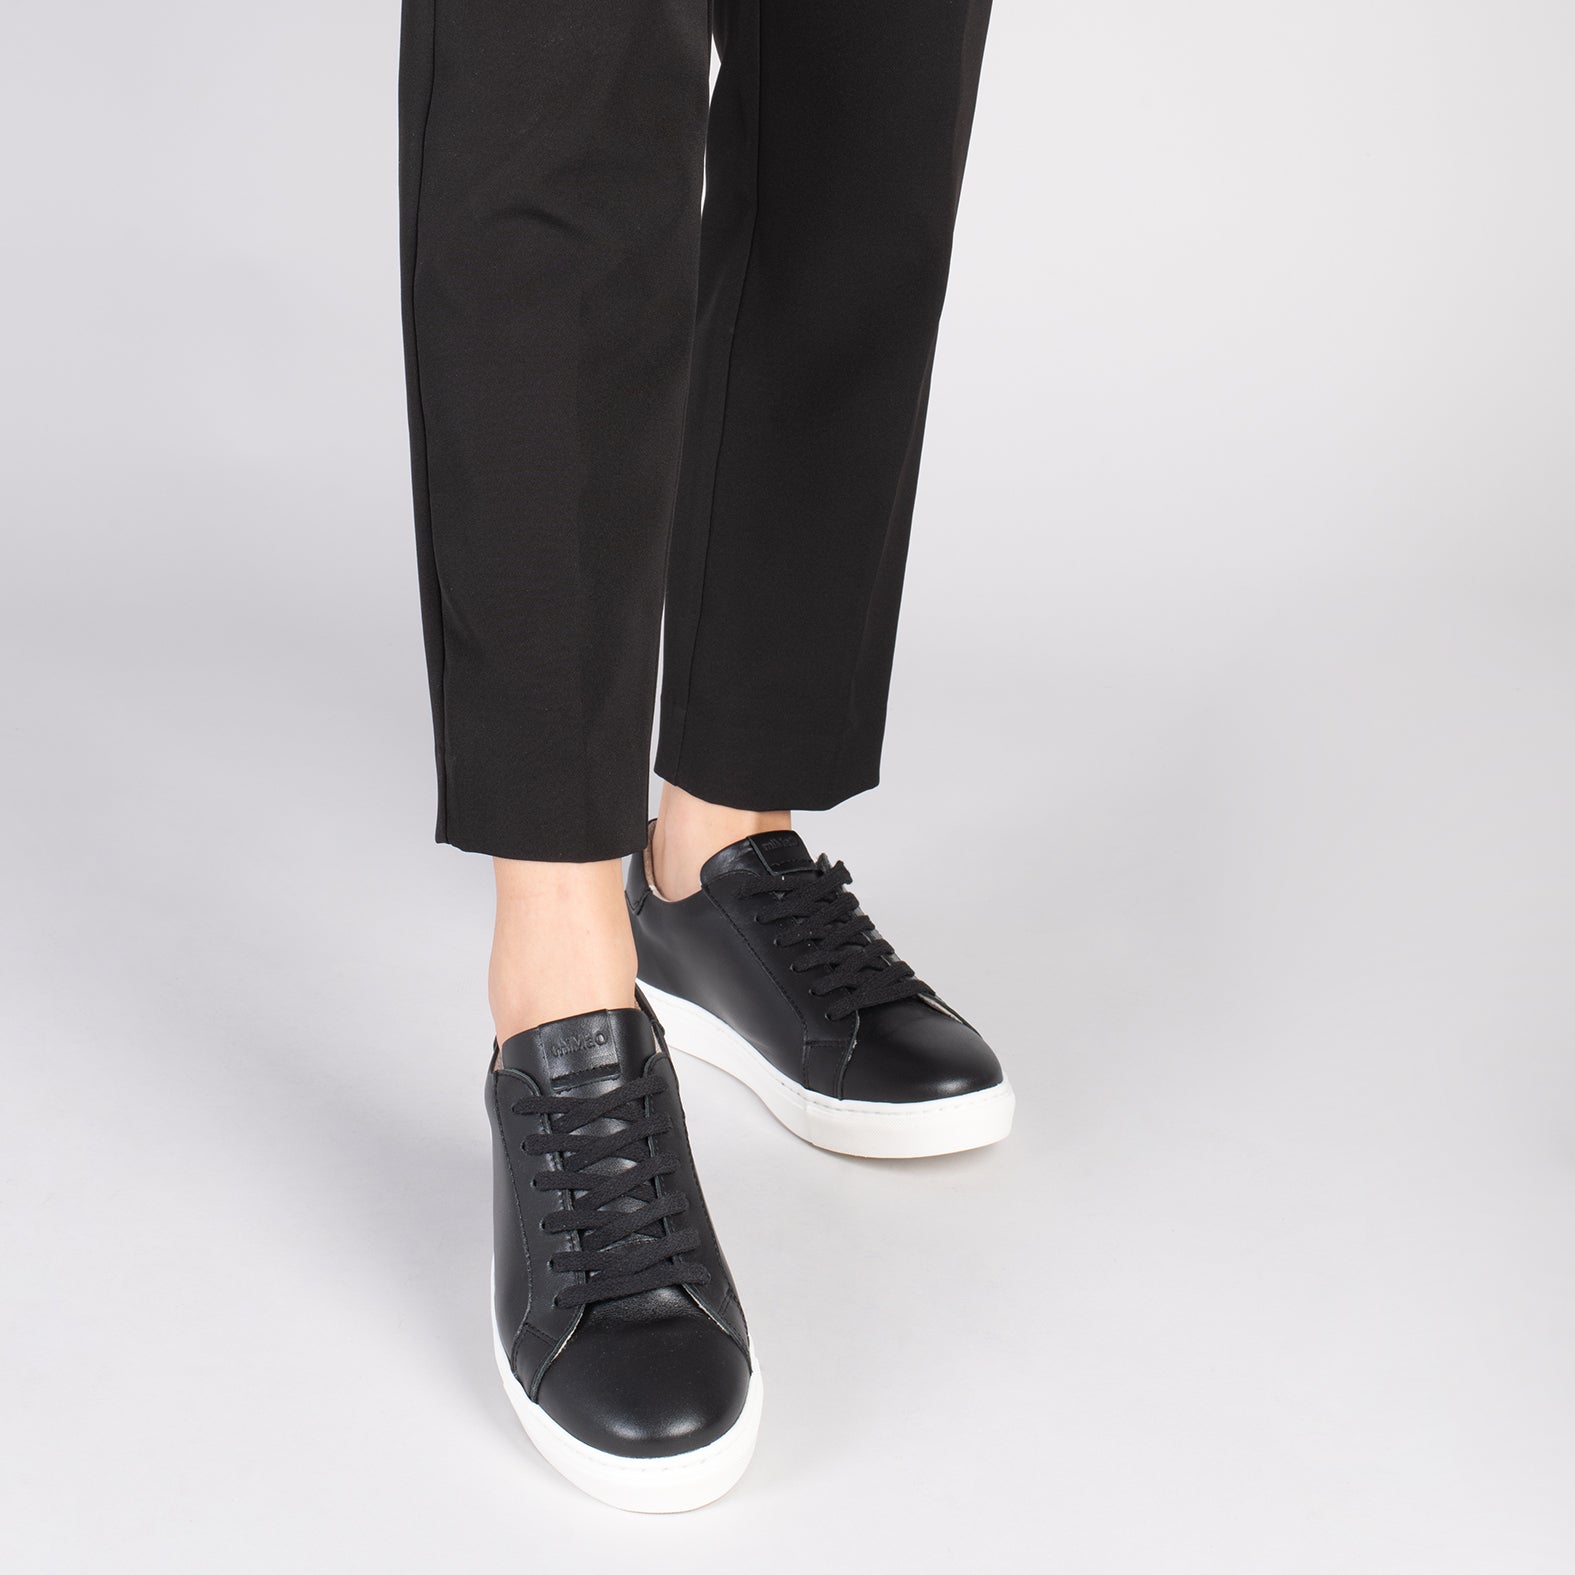 SNEAKER – BLACK elegant lifestyle sneakers